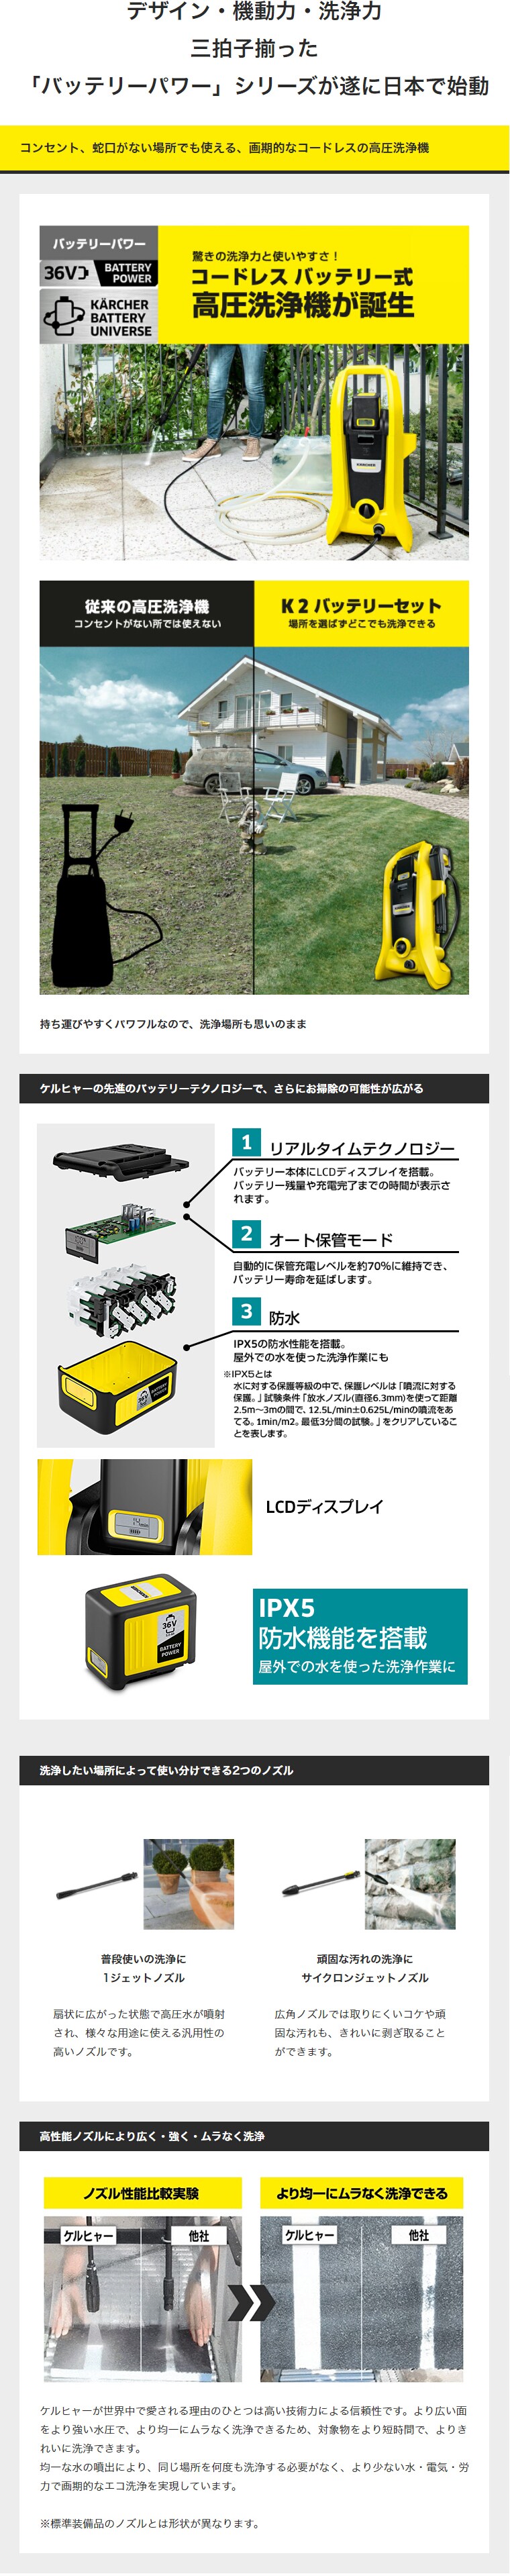 デザイン・機動力・洗浄力 三拍子揃った「バッテリーパワー」シリーズが遂に日本で始動